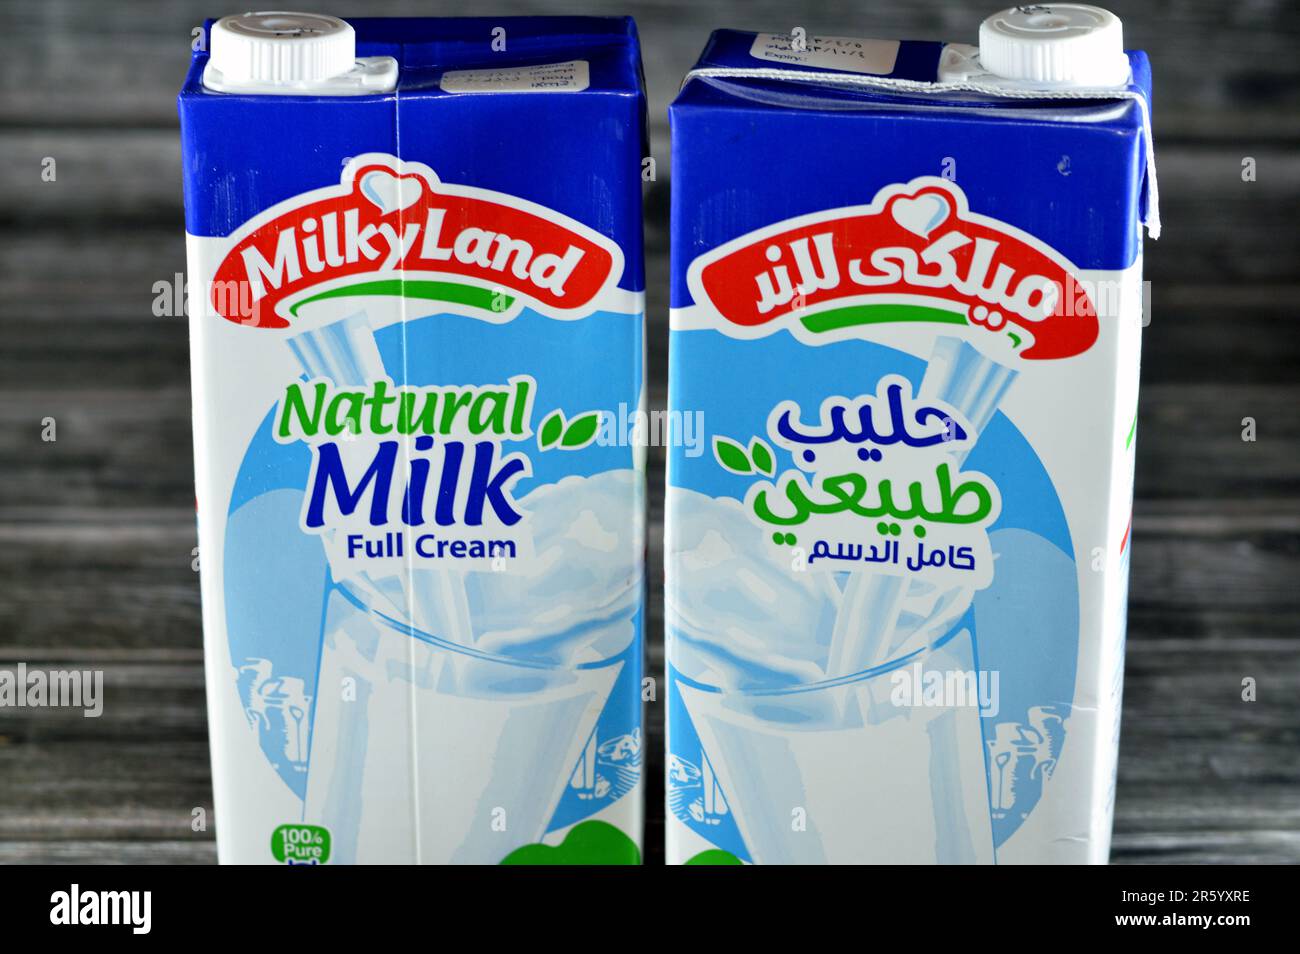 Milk carton bottle Banque d'images détourées - Alamy